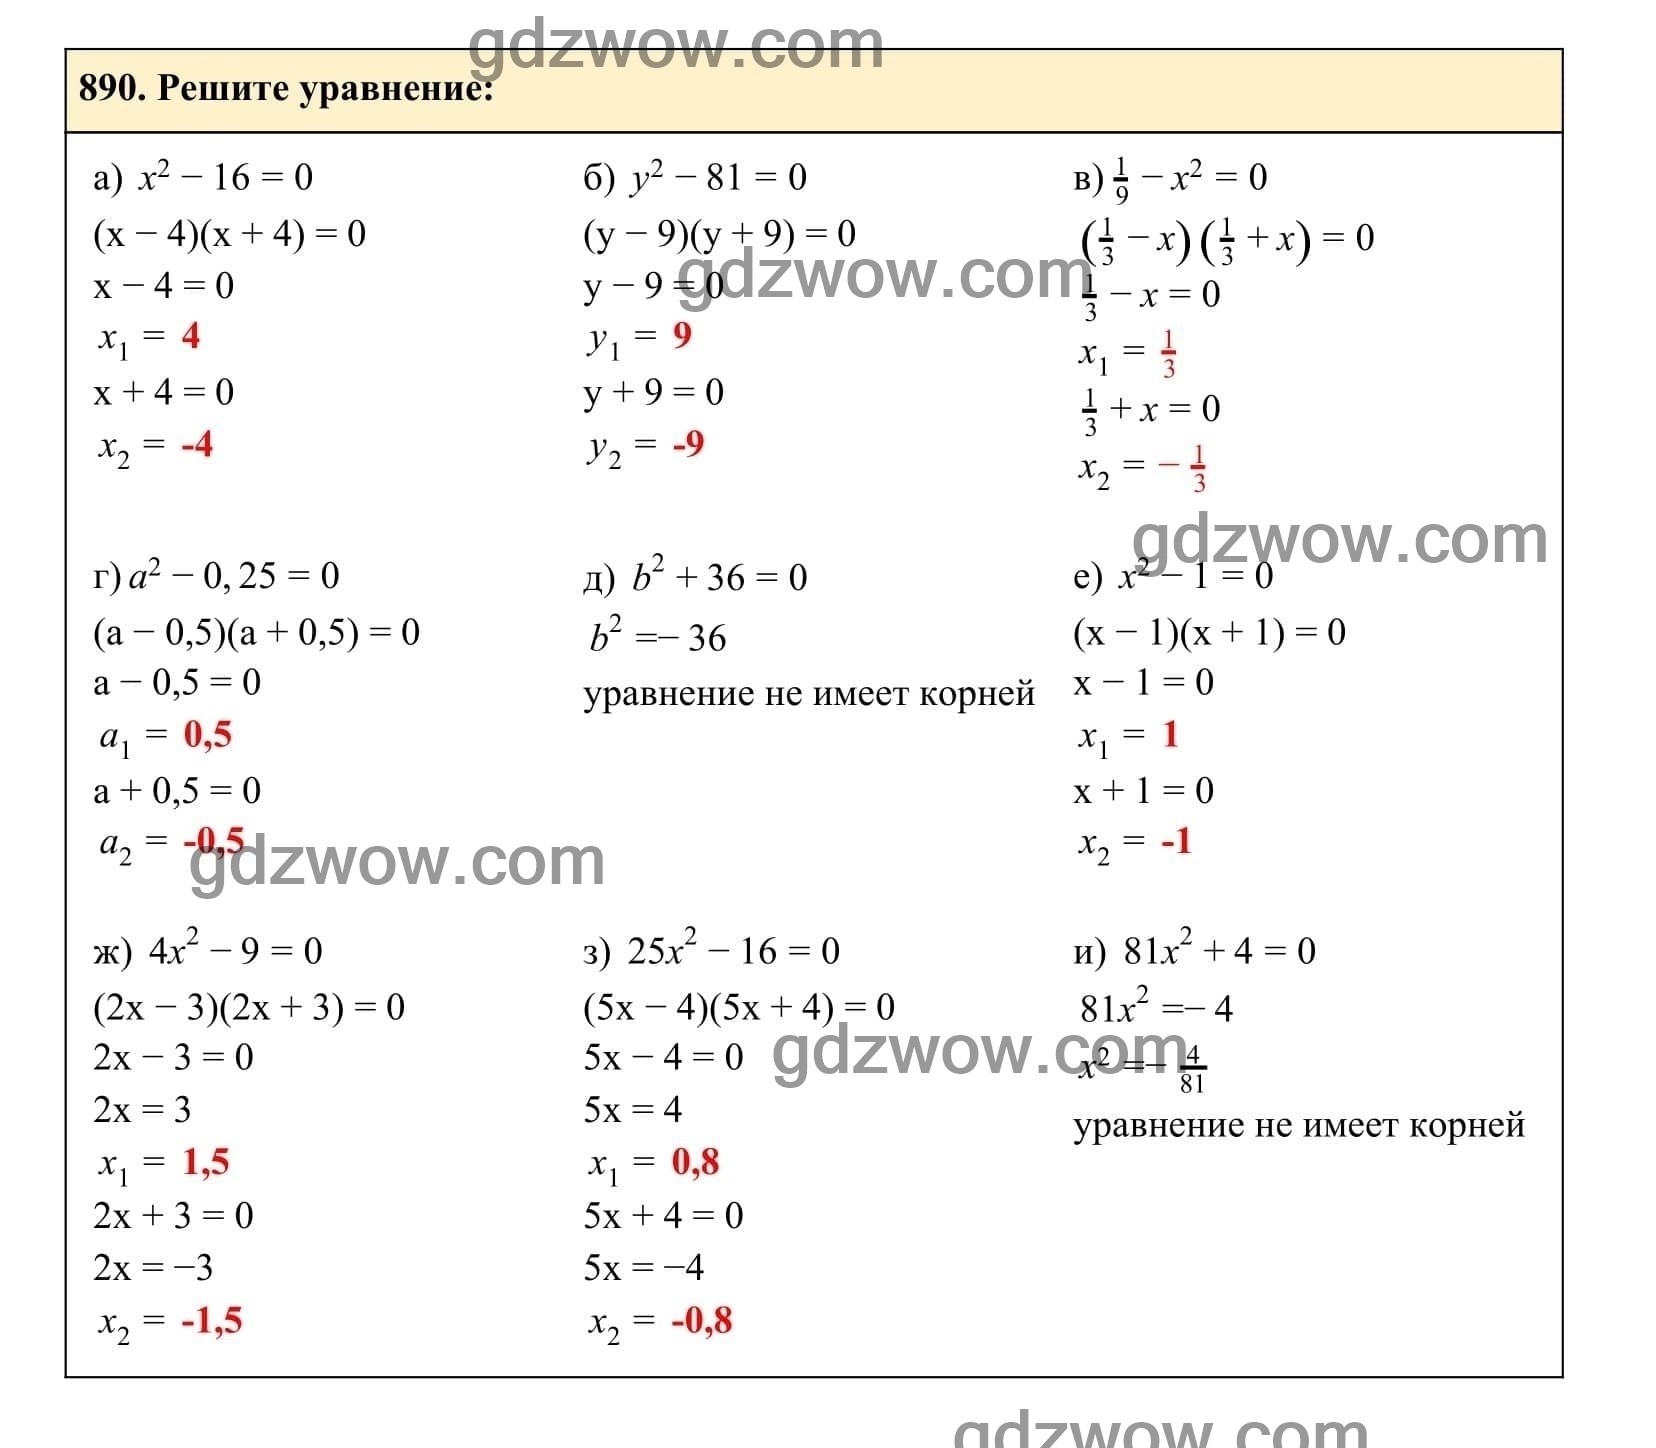 Упражнение 890 - ГДЗ по Алгебре 7 класс Учебник Макарычев (решебник) - GDZwow